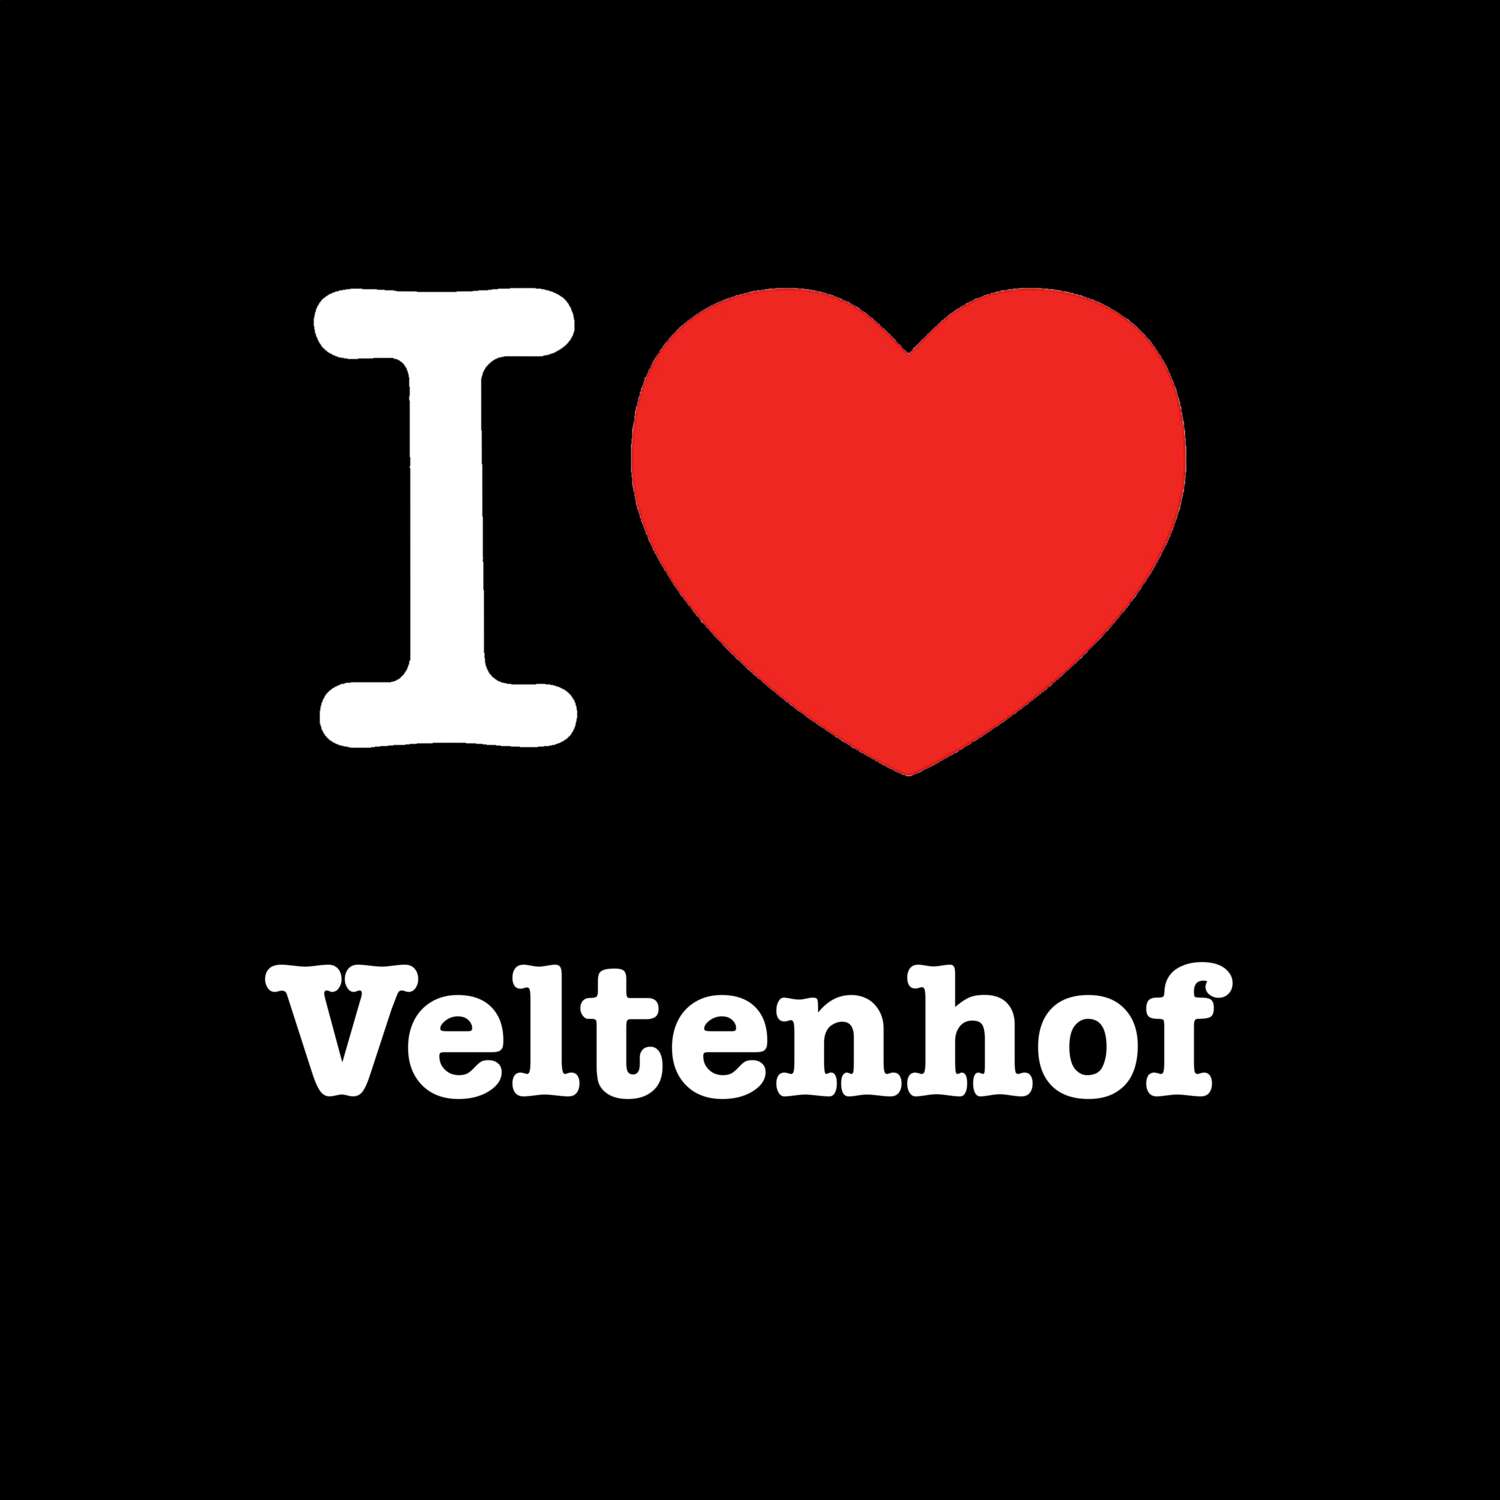 Veltenhof T-Shirt »I love«